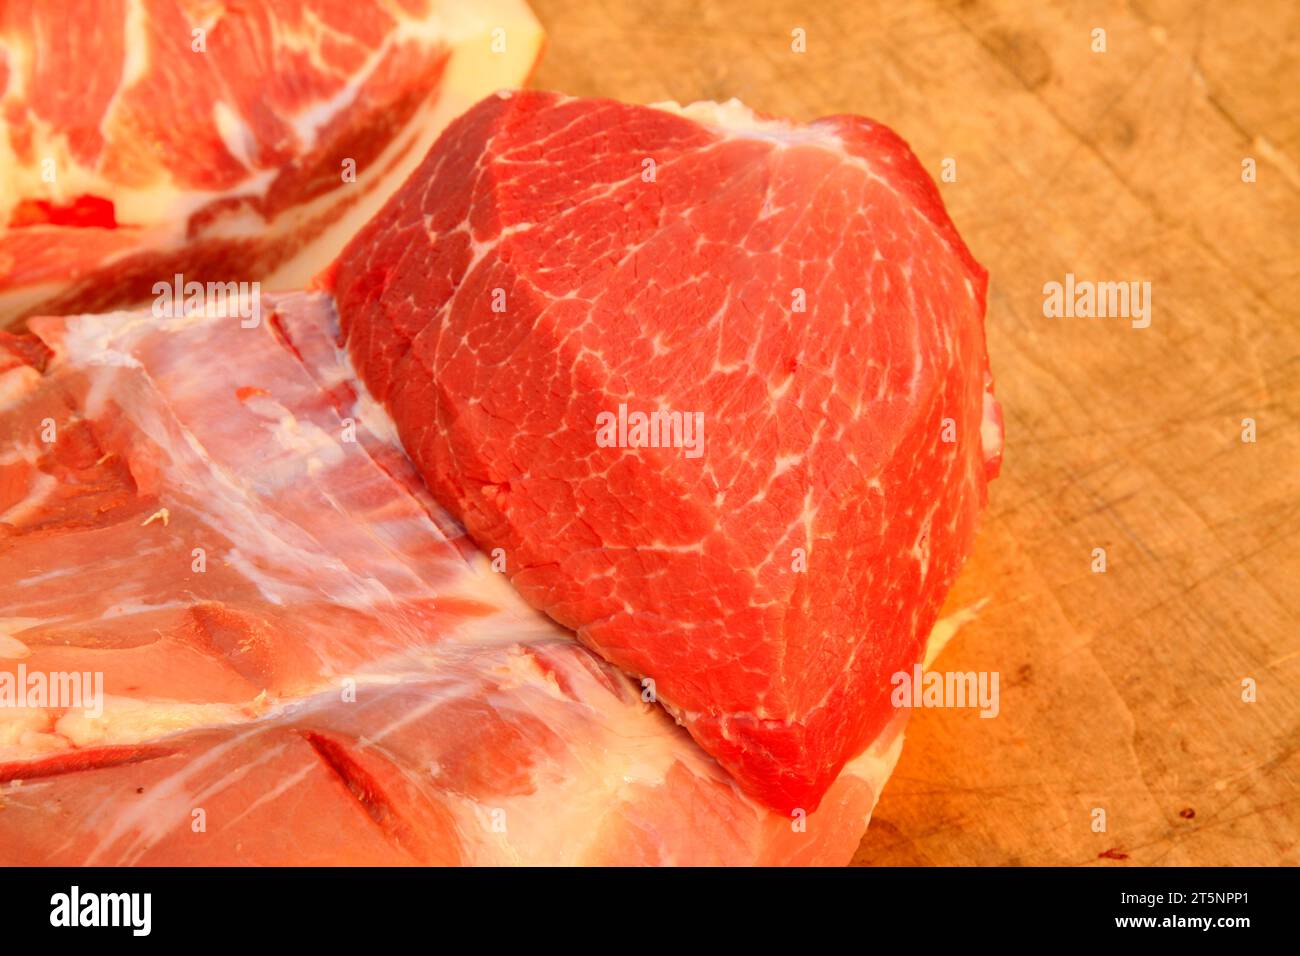 Schweinefleisch auf dem Brett, Nahaufnahme des Fotos Stockfoto